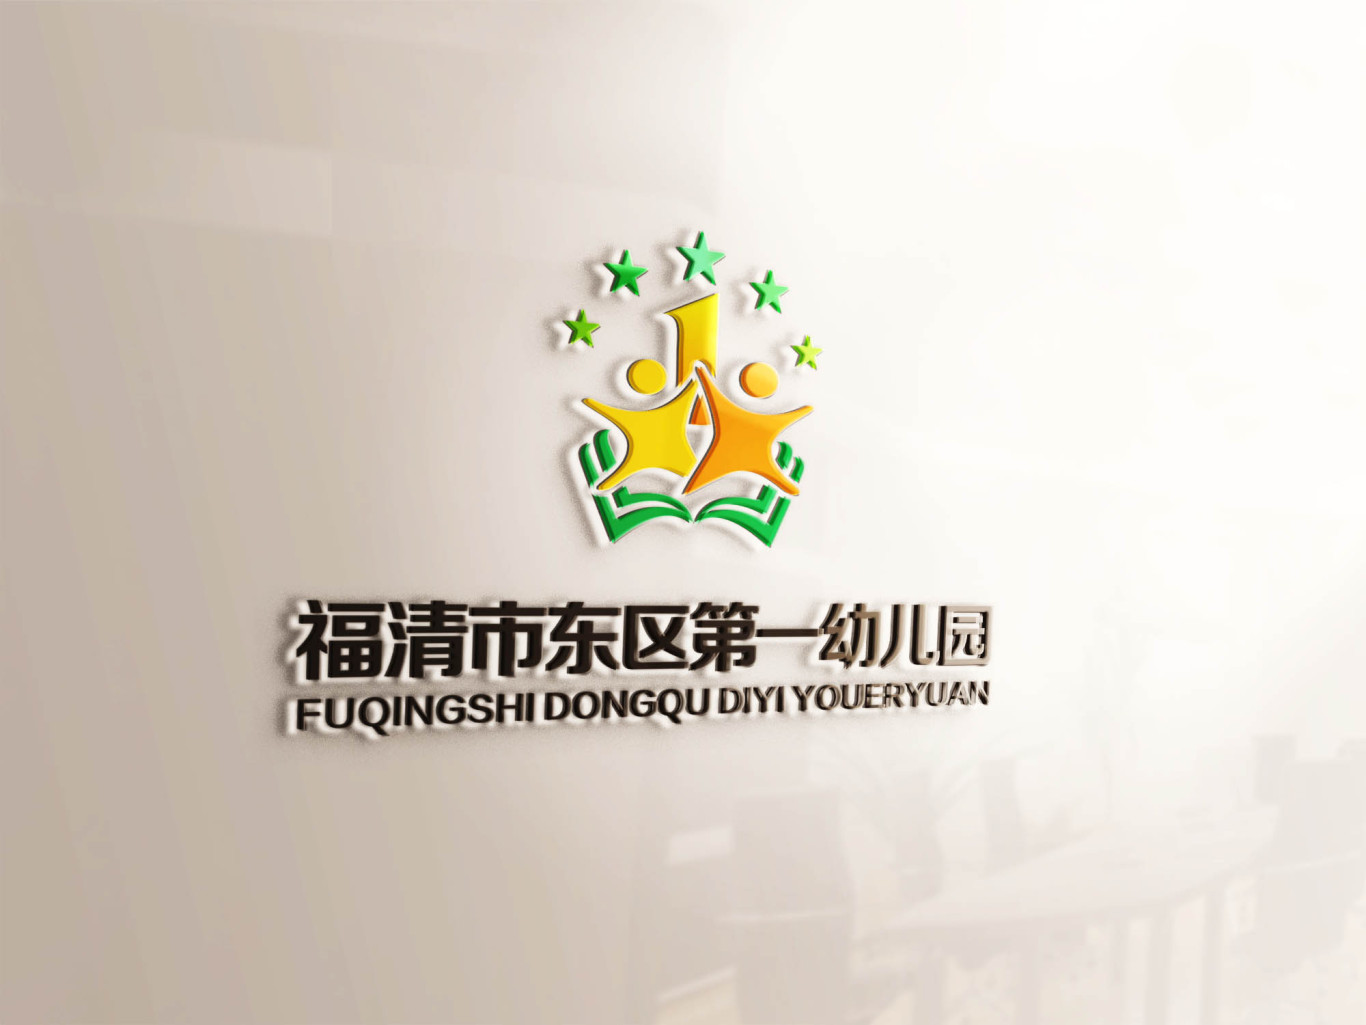 福清市东区第一幼儿园logo设计方案图2